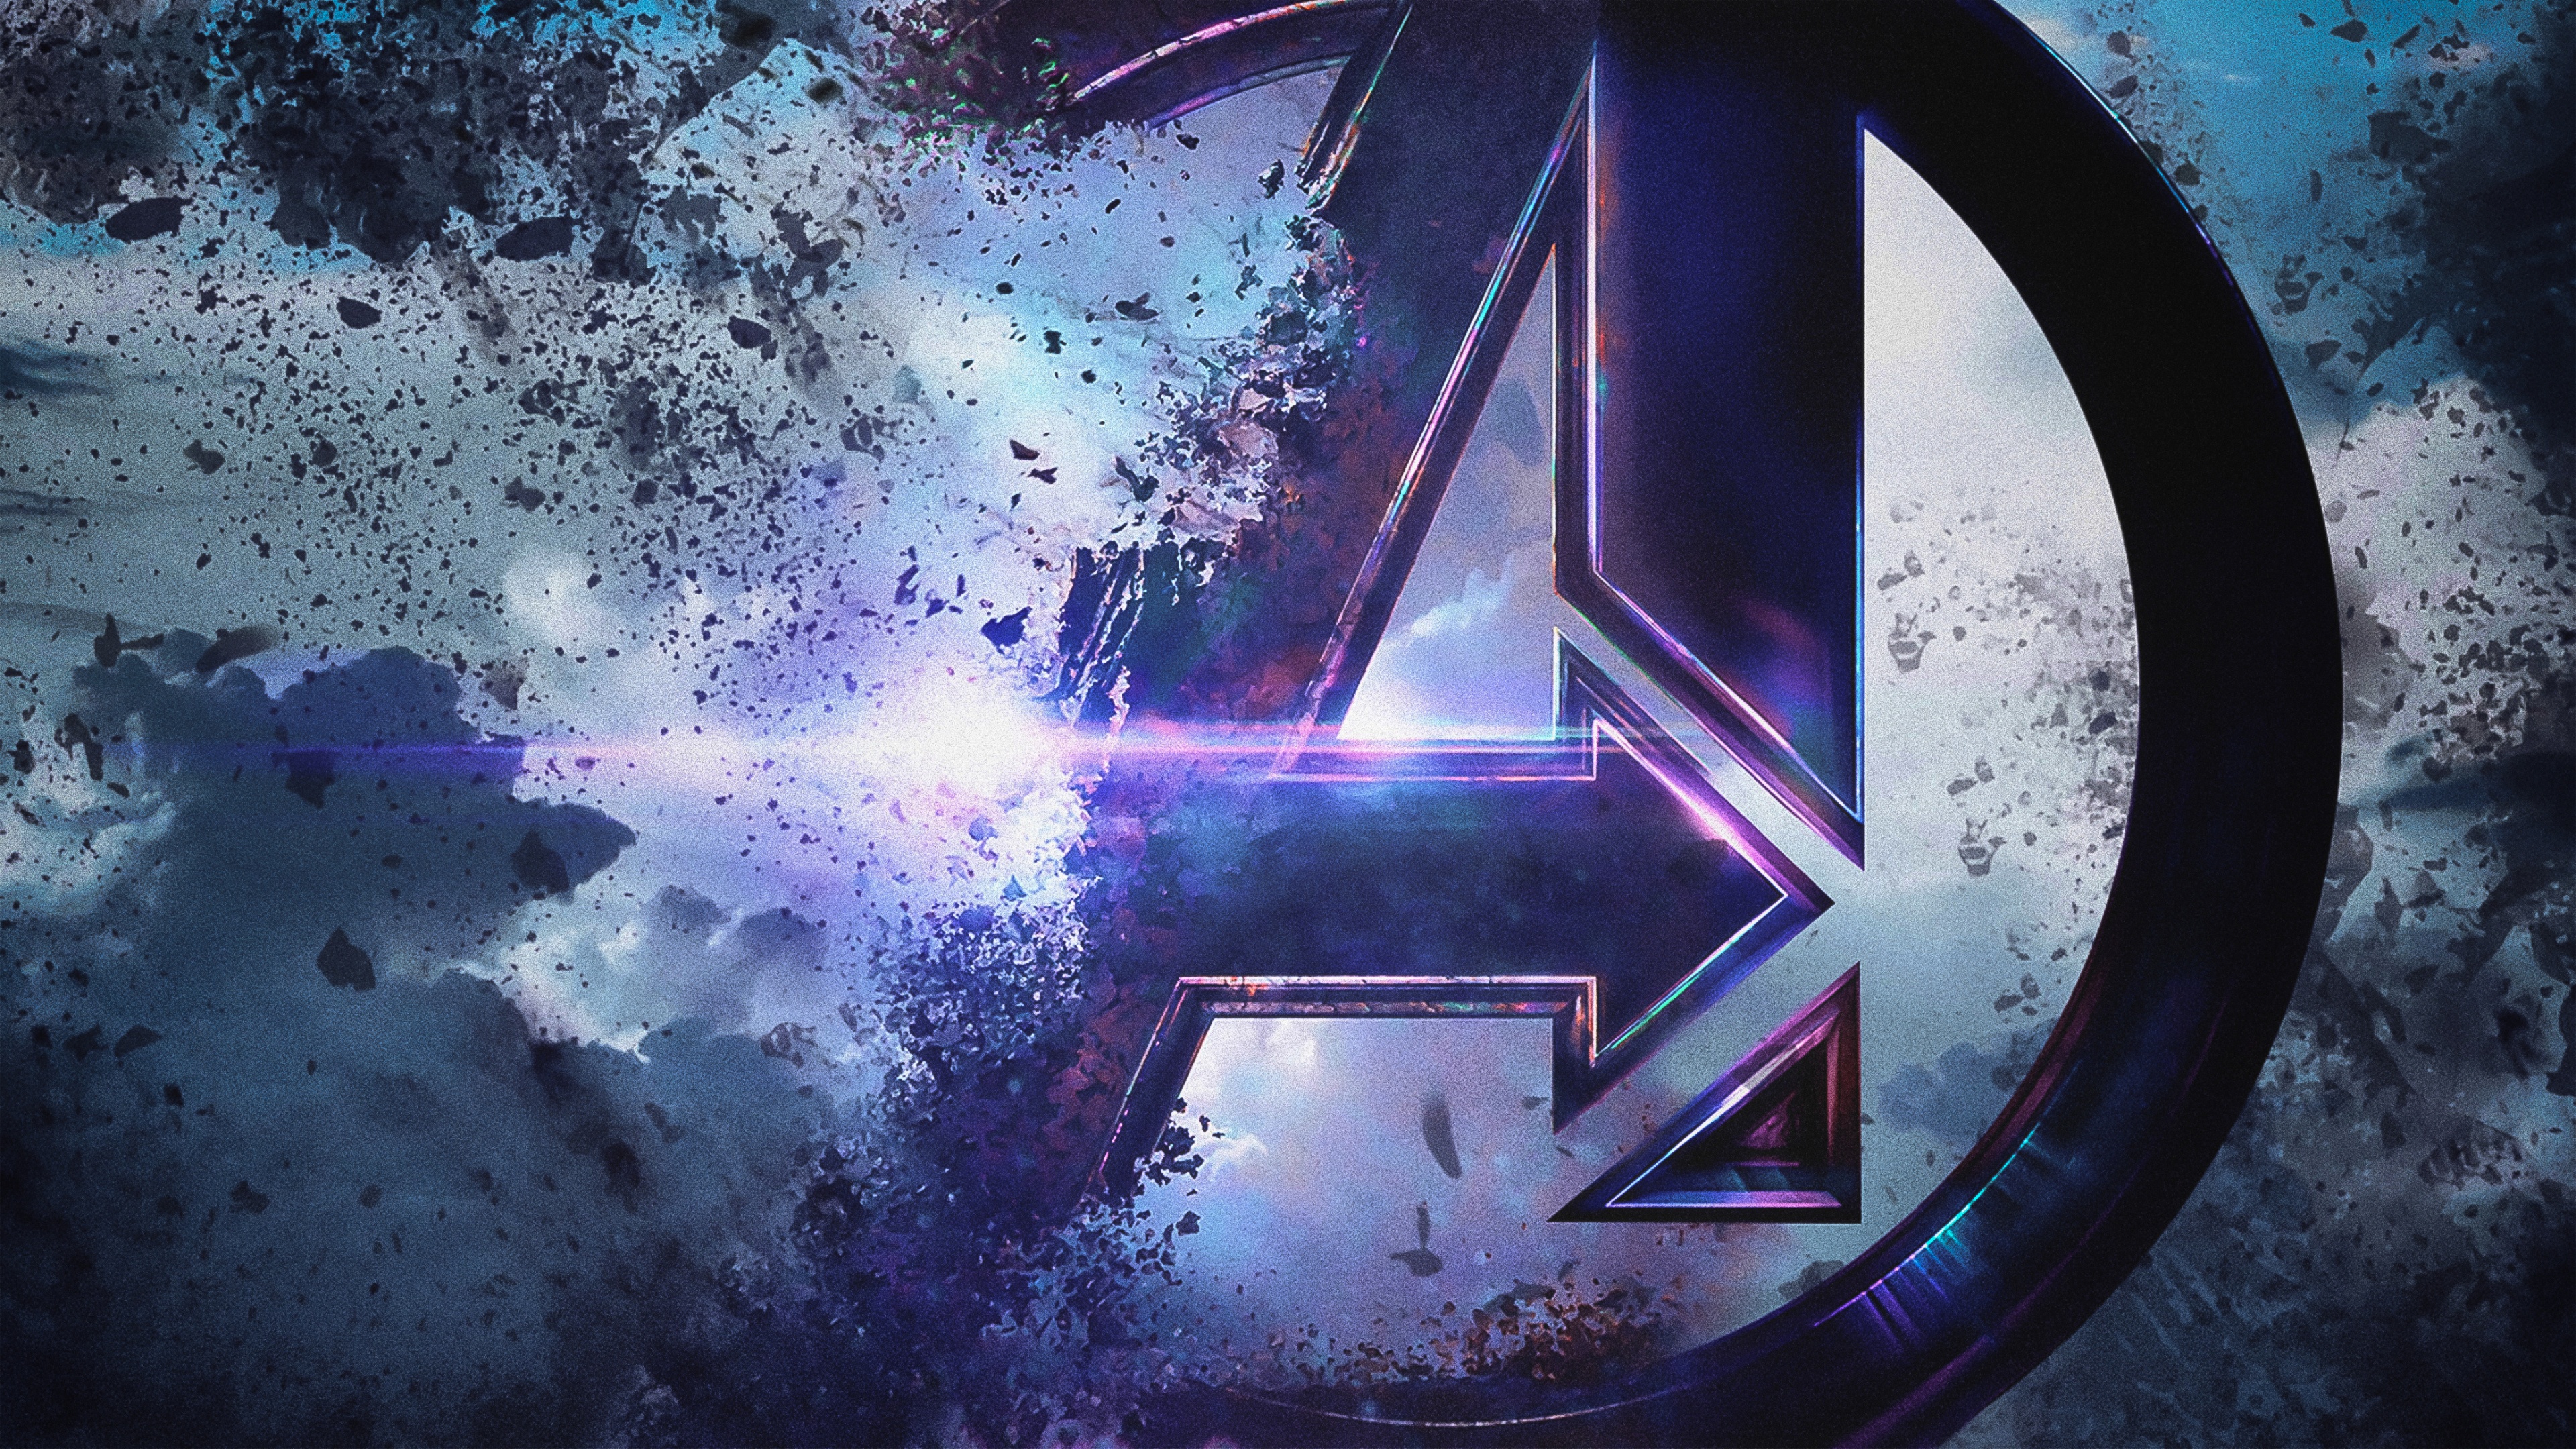 Avengers: Hãy cùng đến với đội siêu anh hùng Avengers để chiến đấu bảo vệ thế giới khỏi các kẻ thù đáng sợ. Xem hình ảnh và đón chờ những trận đánh đầy ám ảnh cùng các siêu anh hùng quen thuộc như Captain America, Iron Man và Black Widow.